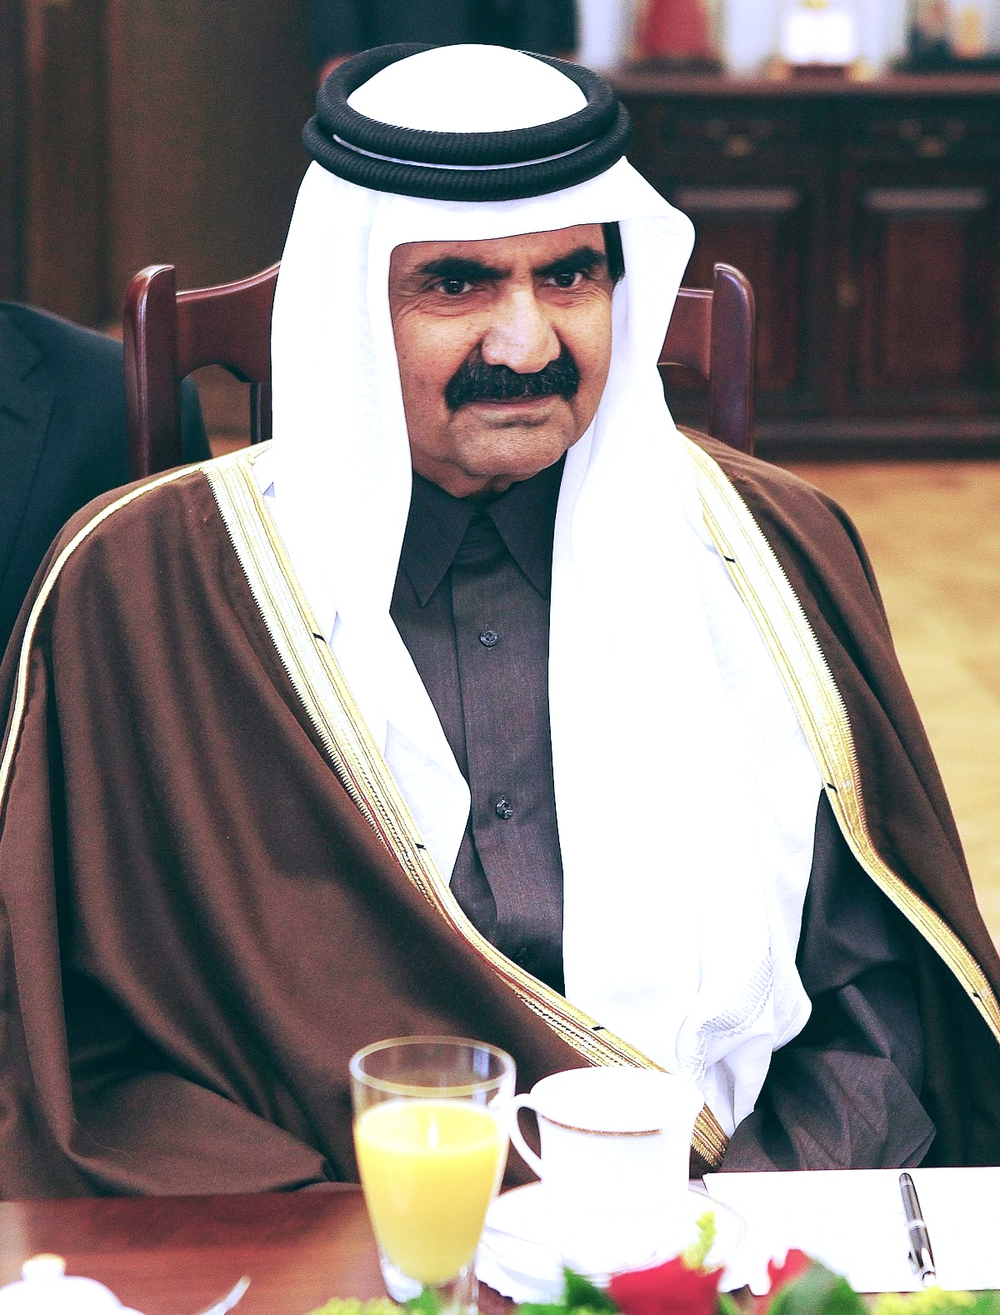 Qatar: Từ xó hoang mạc thành thiên đường nhờ Quốc vương biết nghĩ Nước nhỏ mà nhún mình có thể gặp nguy hiểm - Ảnh 5.